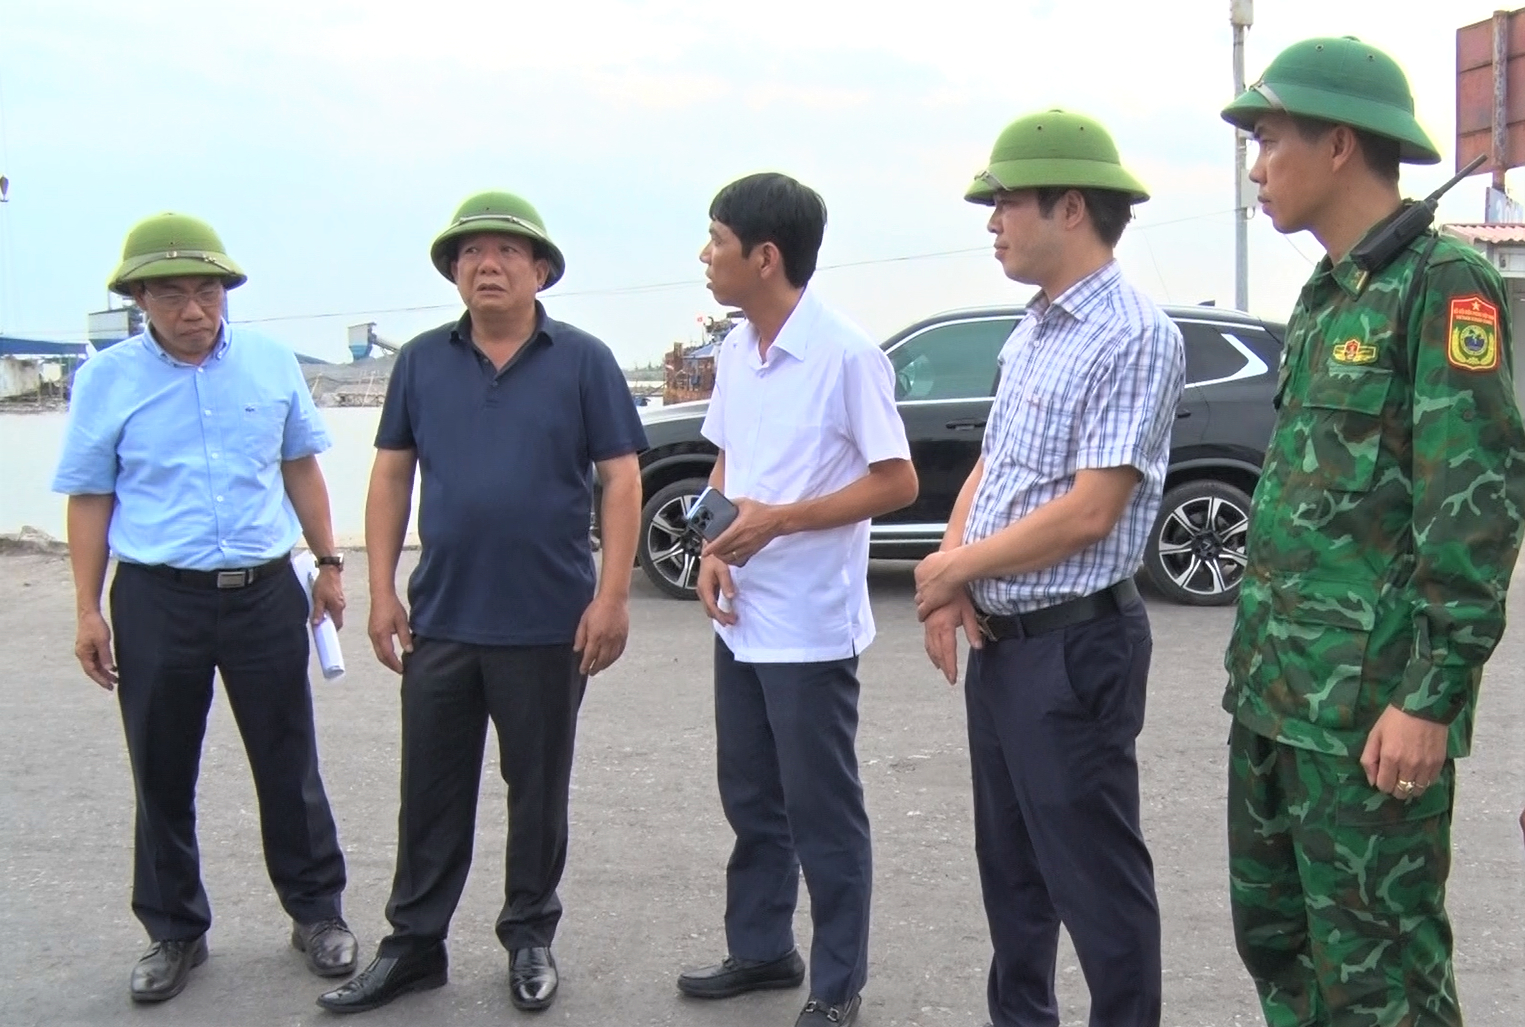 Ông Nguyễn Đức Thọ - Phó Chủ tịch UBND TP Hải Phòng yêu cầu các ngành, cơ quan, đơn vị theo chức năng, nhiệm vụ được giao chỉ đạo các đơn vị trực thuộc thường xuyên theo dõi thông tin, diễn biến của bão số 1. Ảnh: Đinh Mười.